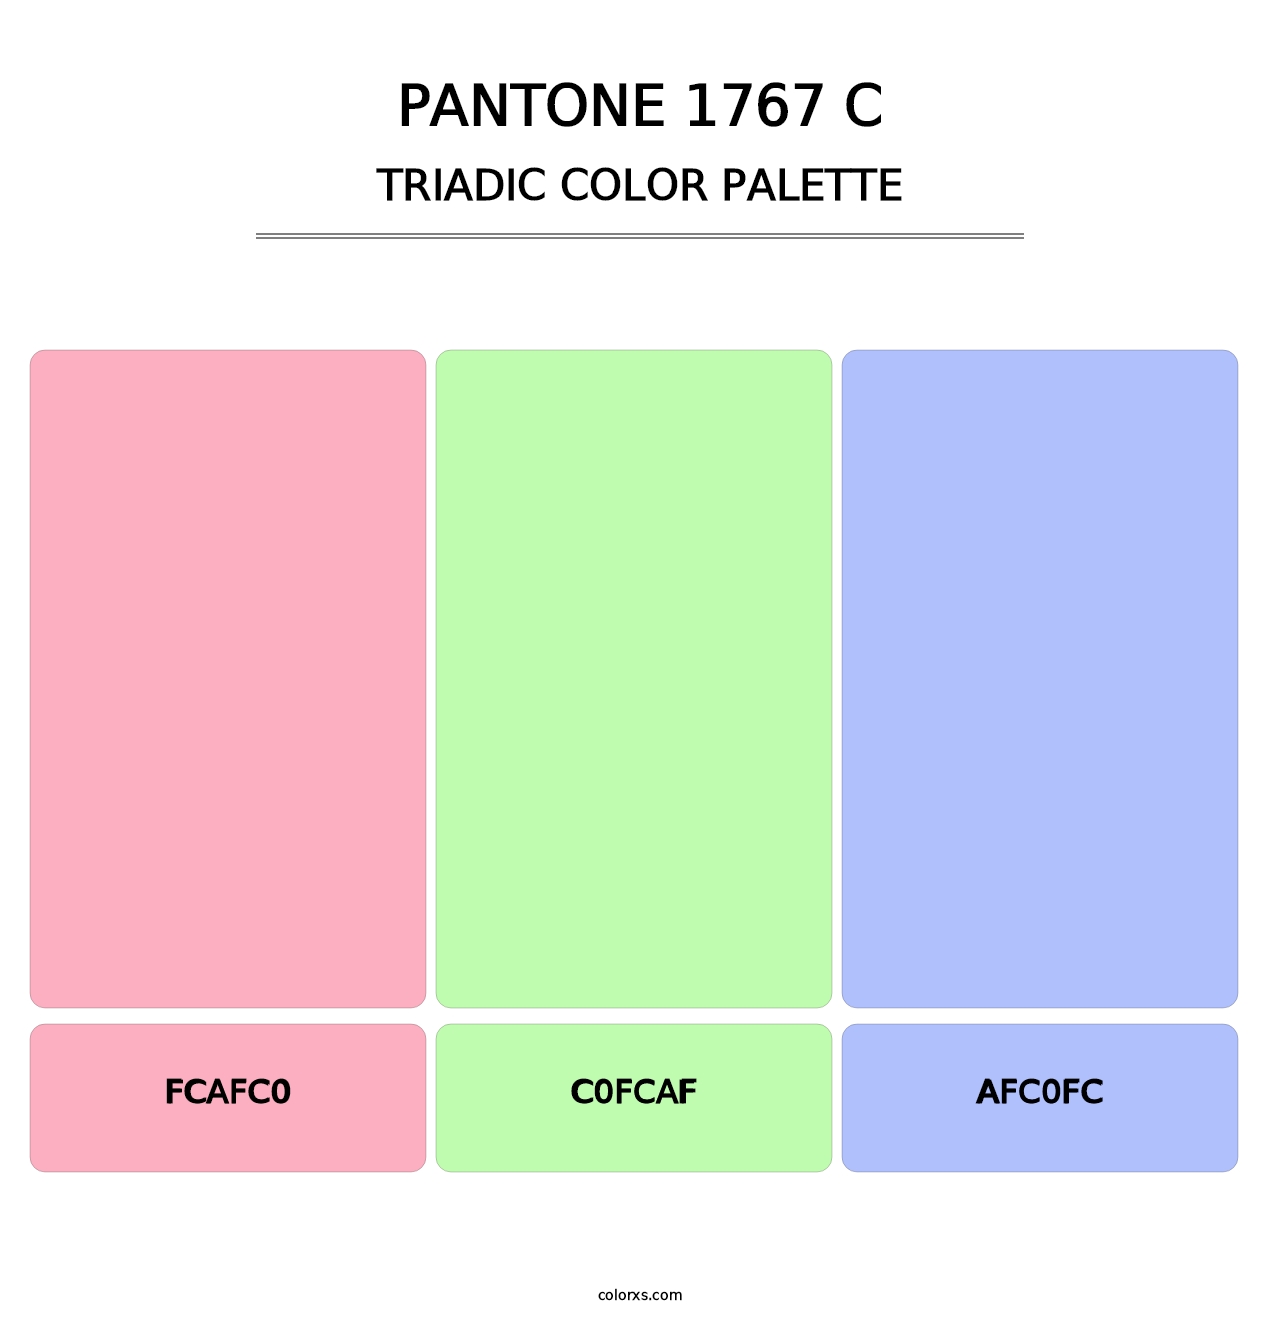 PANTONE 1767 C - Triadic Color Palette